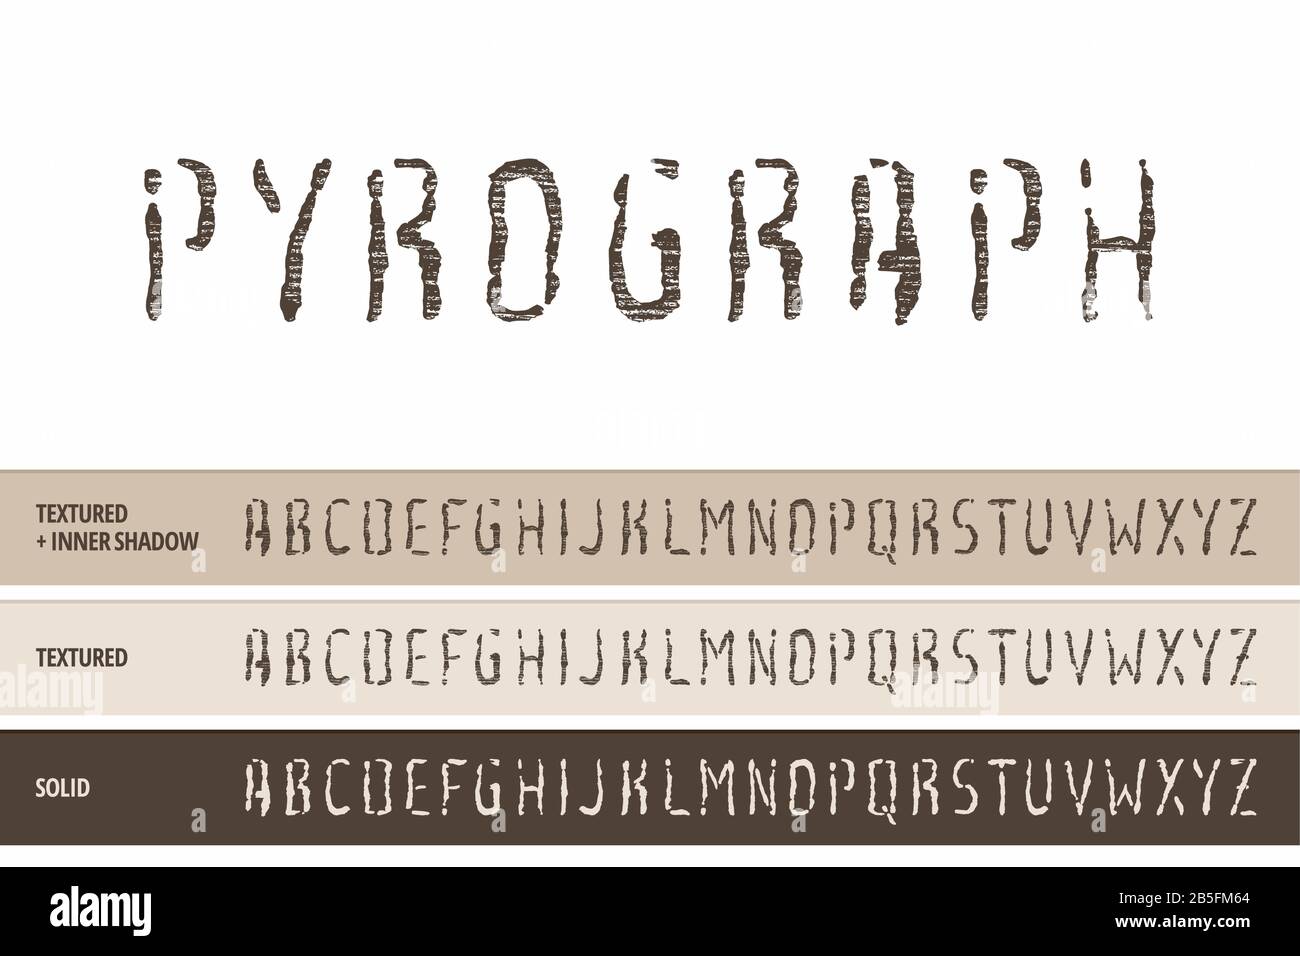 Typeface (Font Vettoriale) In Pirografia Del Legno. Letter Press, Stamp, Rilievo Legno, Taglio E Intaglio (Tipografia Testurizzata). Illustrazione Vettoriale